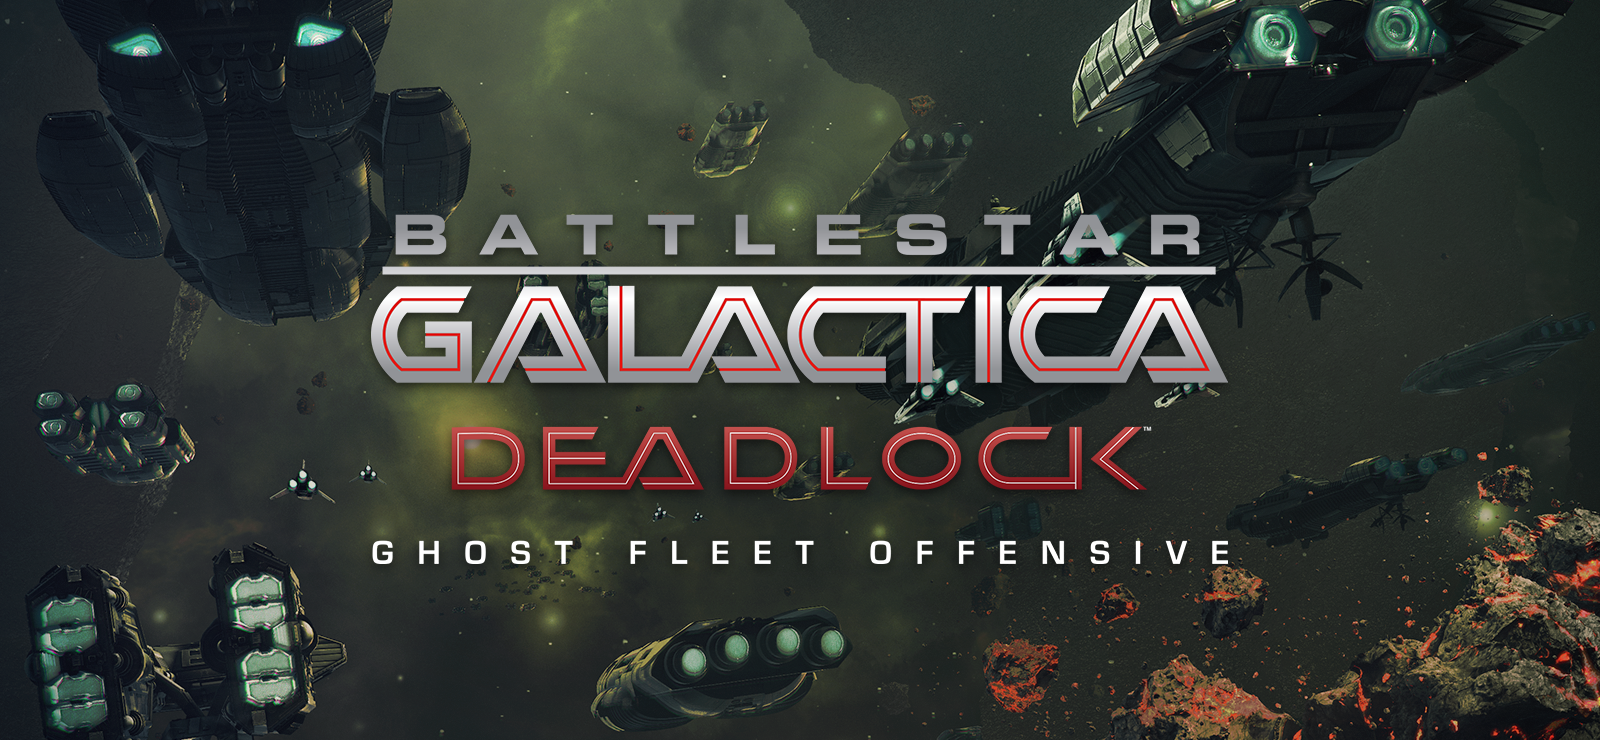 Battlestar Galactica Deadlock: Ghost Fleet Offensive